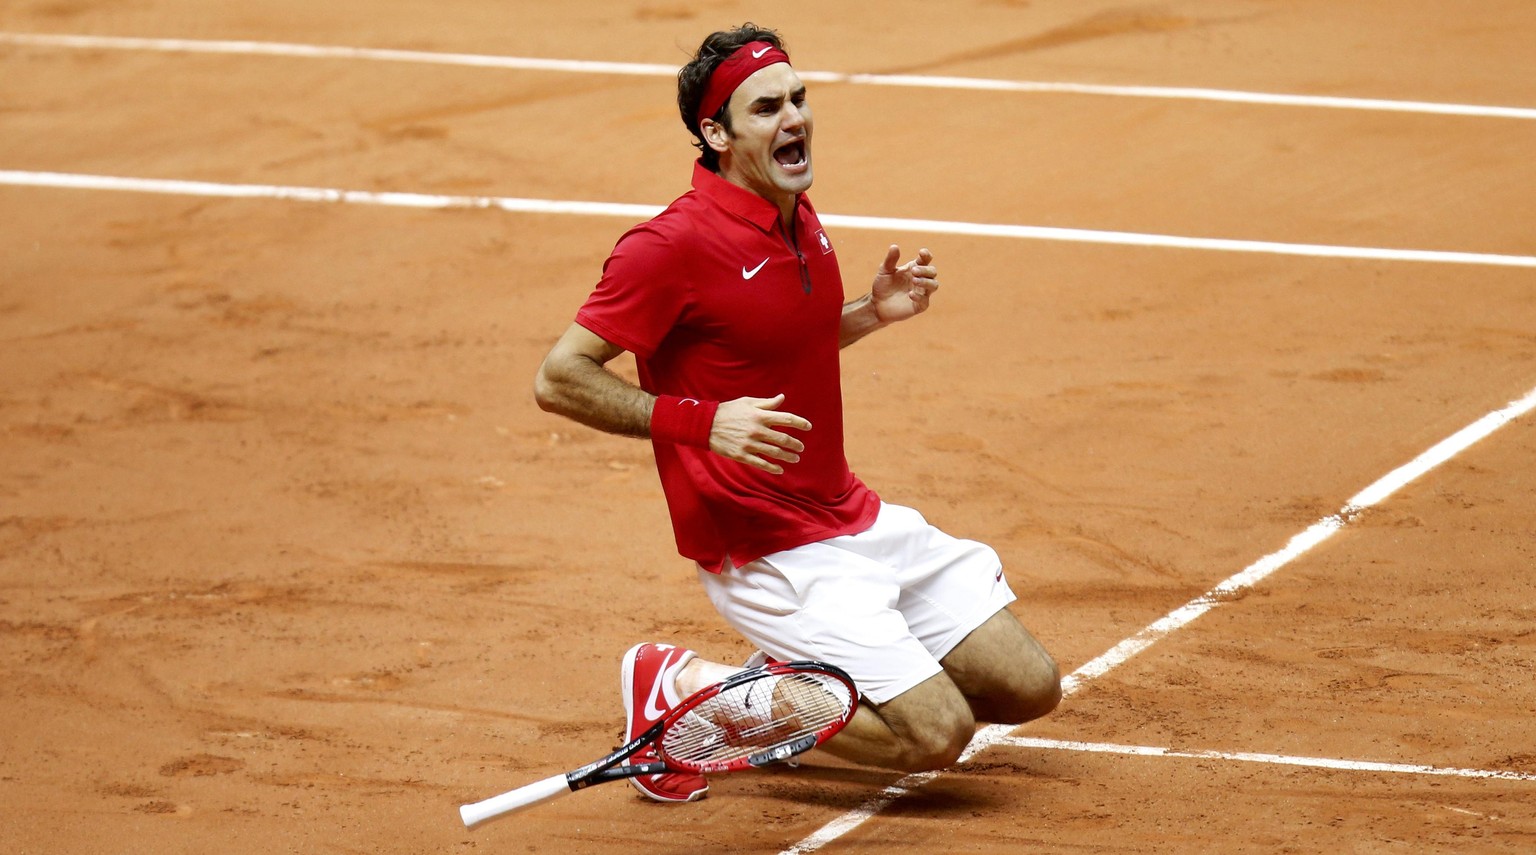 Der Moment der doppelten Erlösung: Federer schlägt Gasquet und muss nicht mehr mit lädiertem Rücken Tennis spielen.